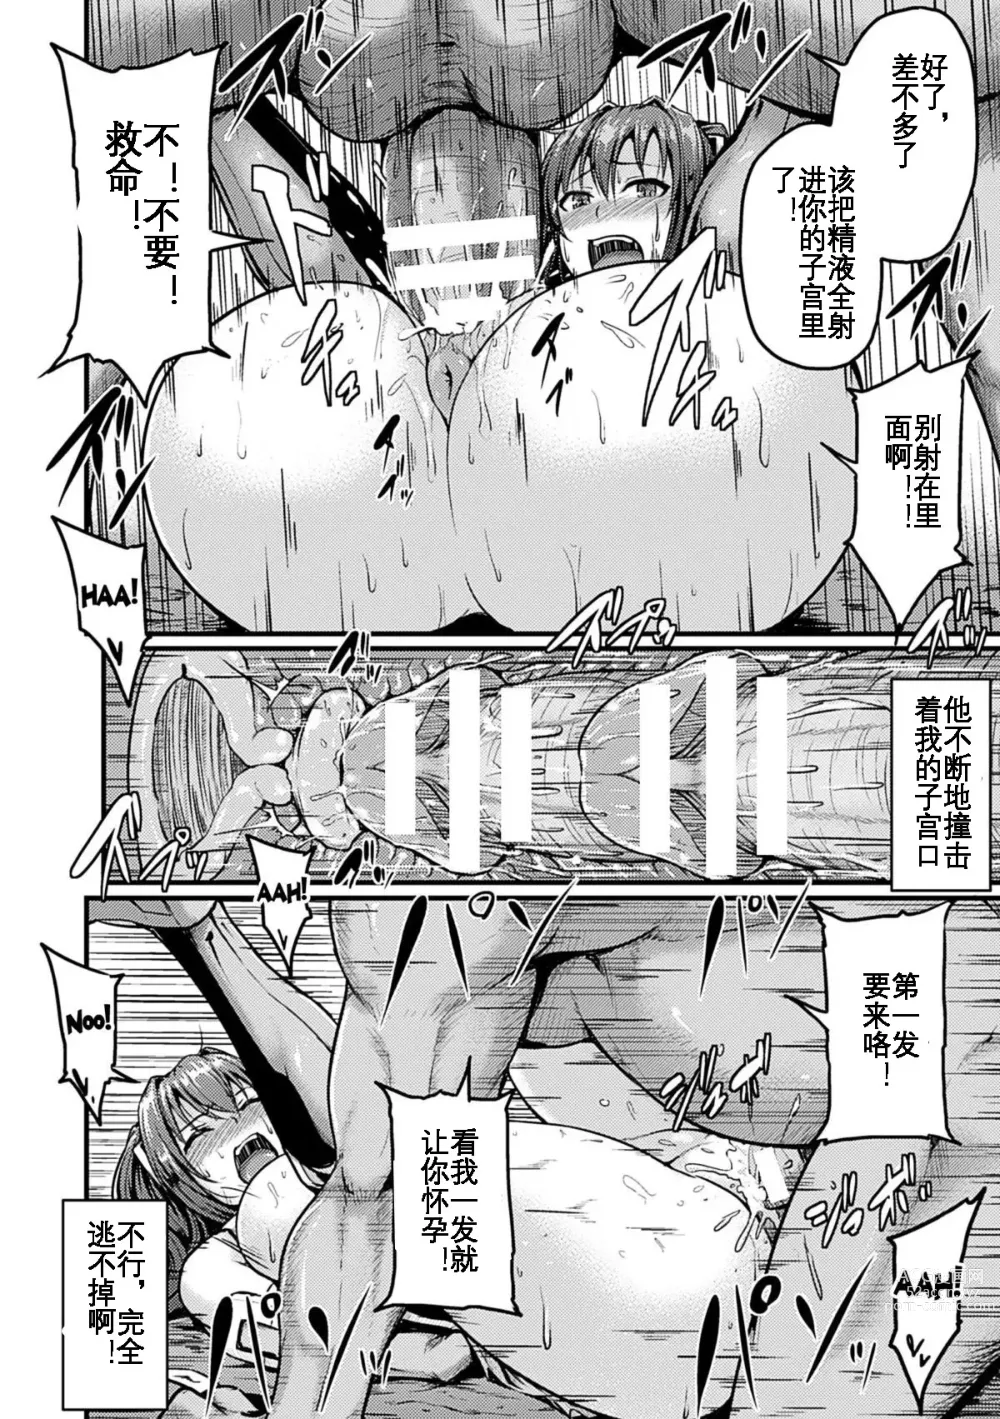 Page 17 of manga Irisraker Buta no Ko o Haramu Seigi no Senshi